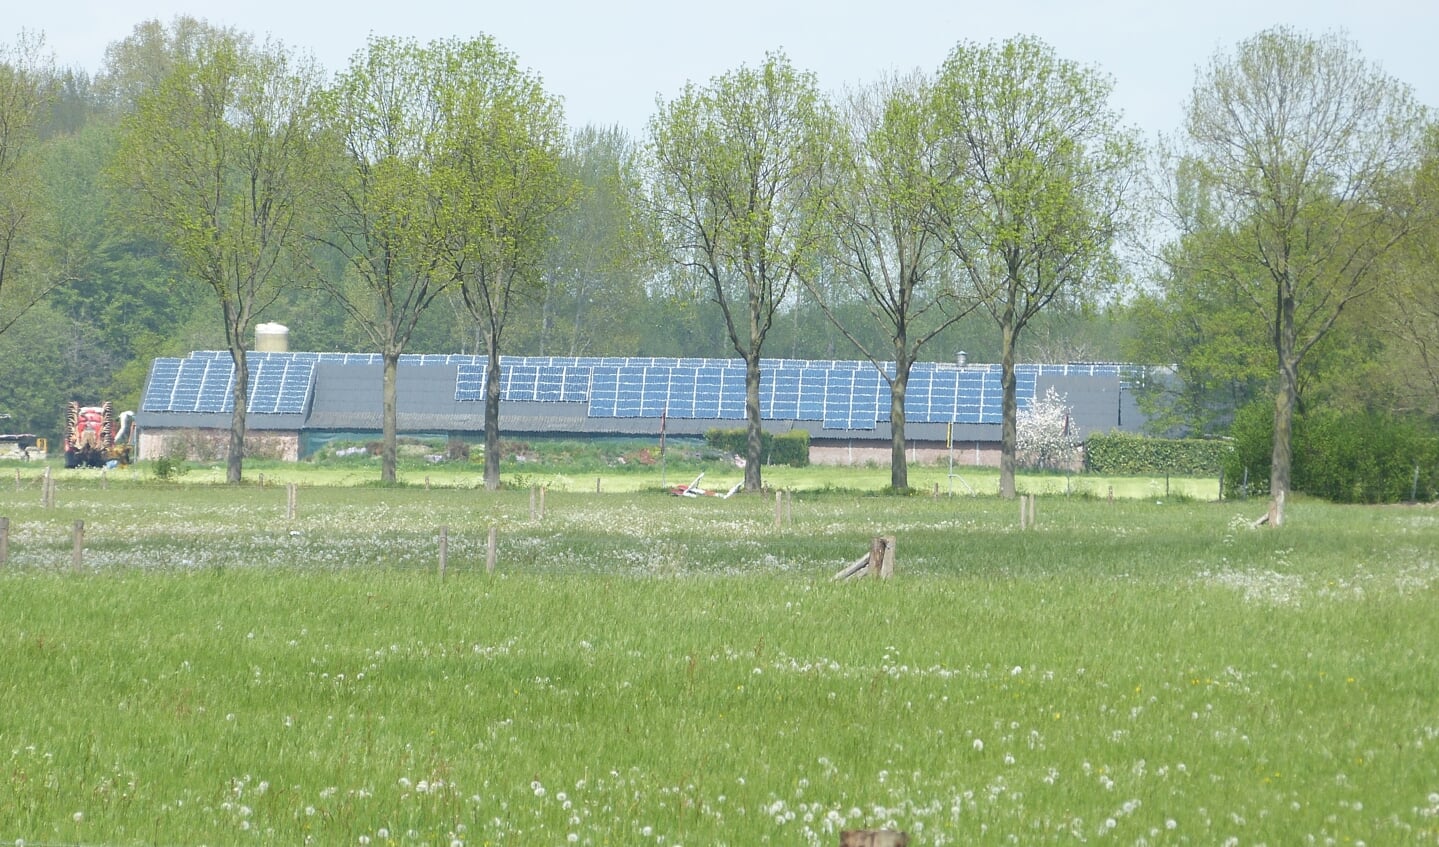 Eerst onderzoek naar meer zonnepanelen op daken in buitengebied. Foto: Bernhard Harfsterkamp